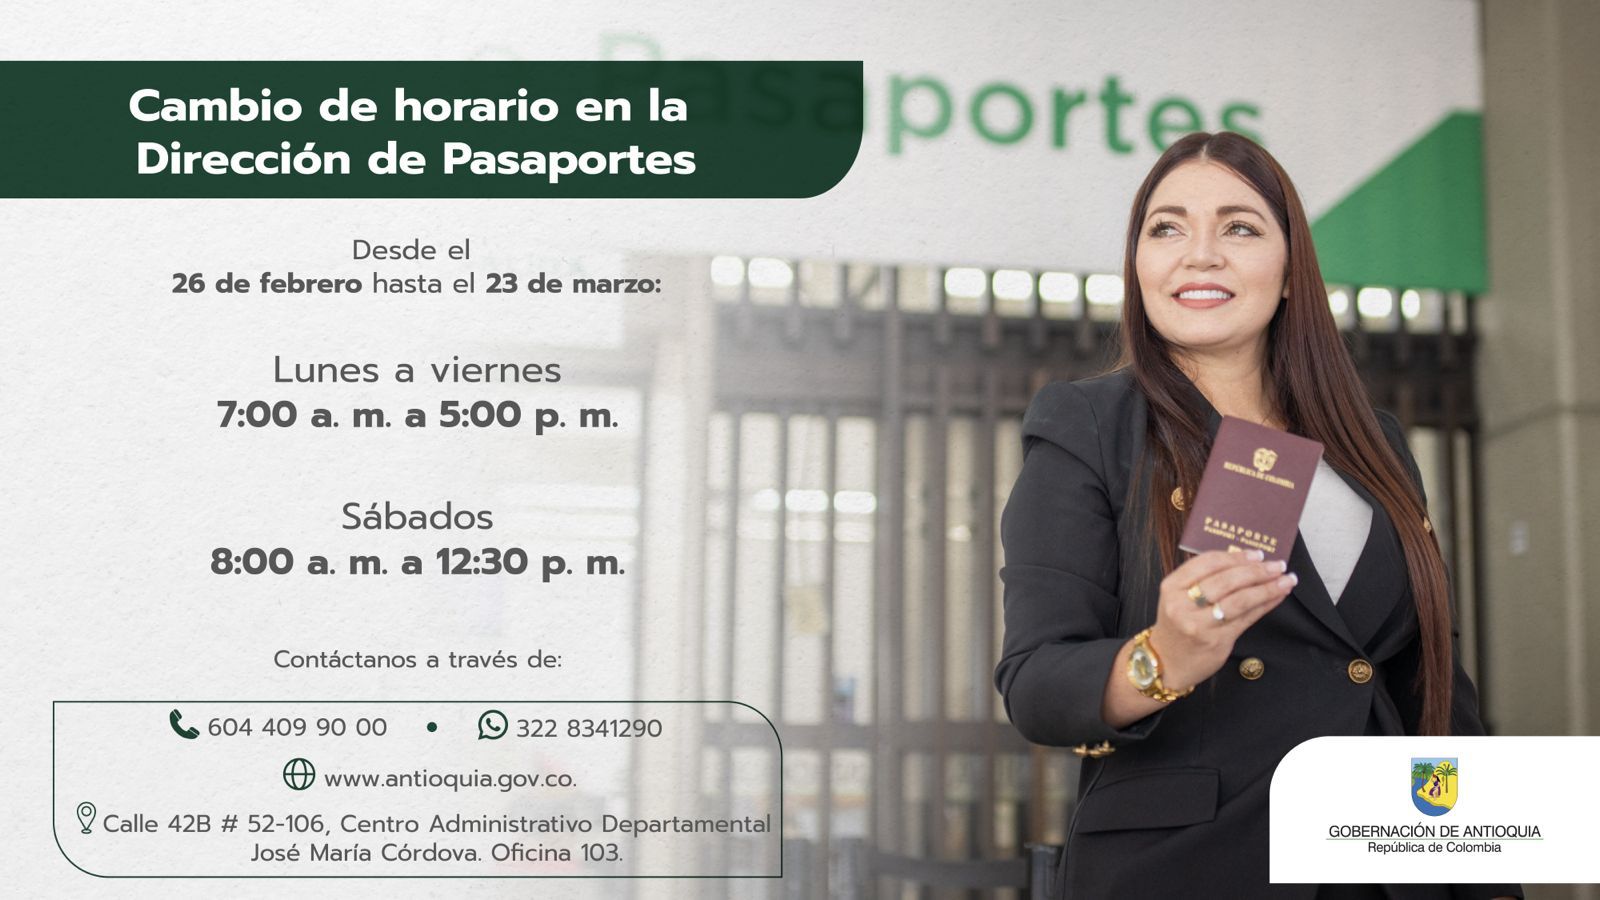 Oficina de pasaportes en Medellín amplía sus horarios de atención